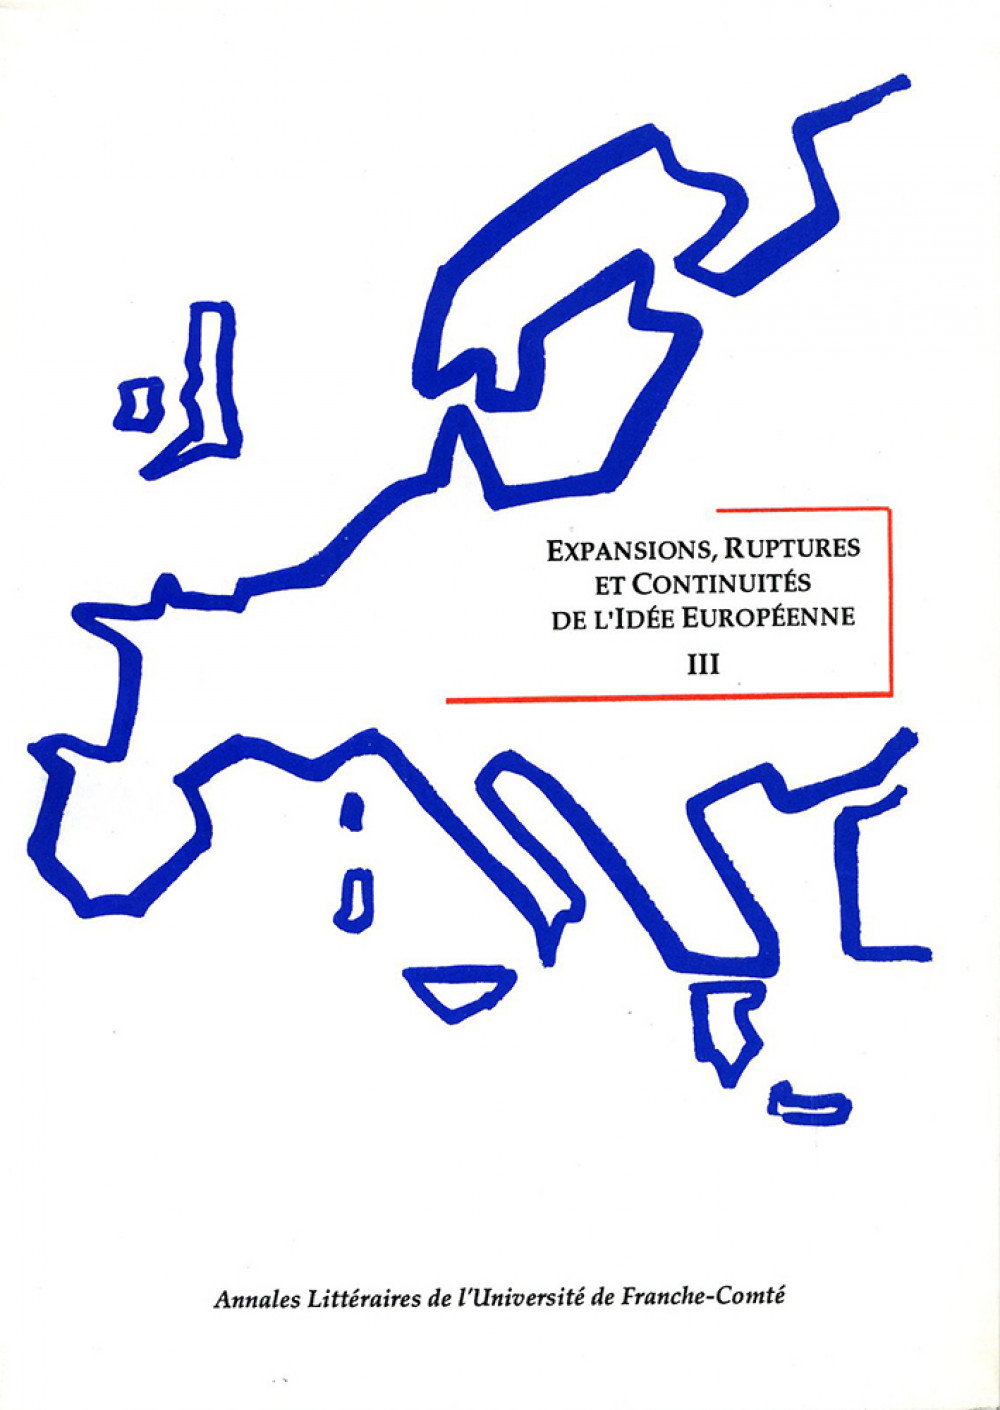 Expansions, Ruptures et Continuité de l’Idée Européenne III